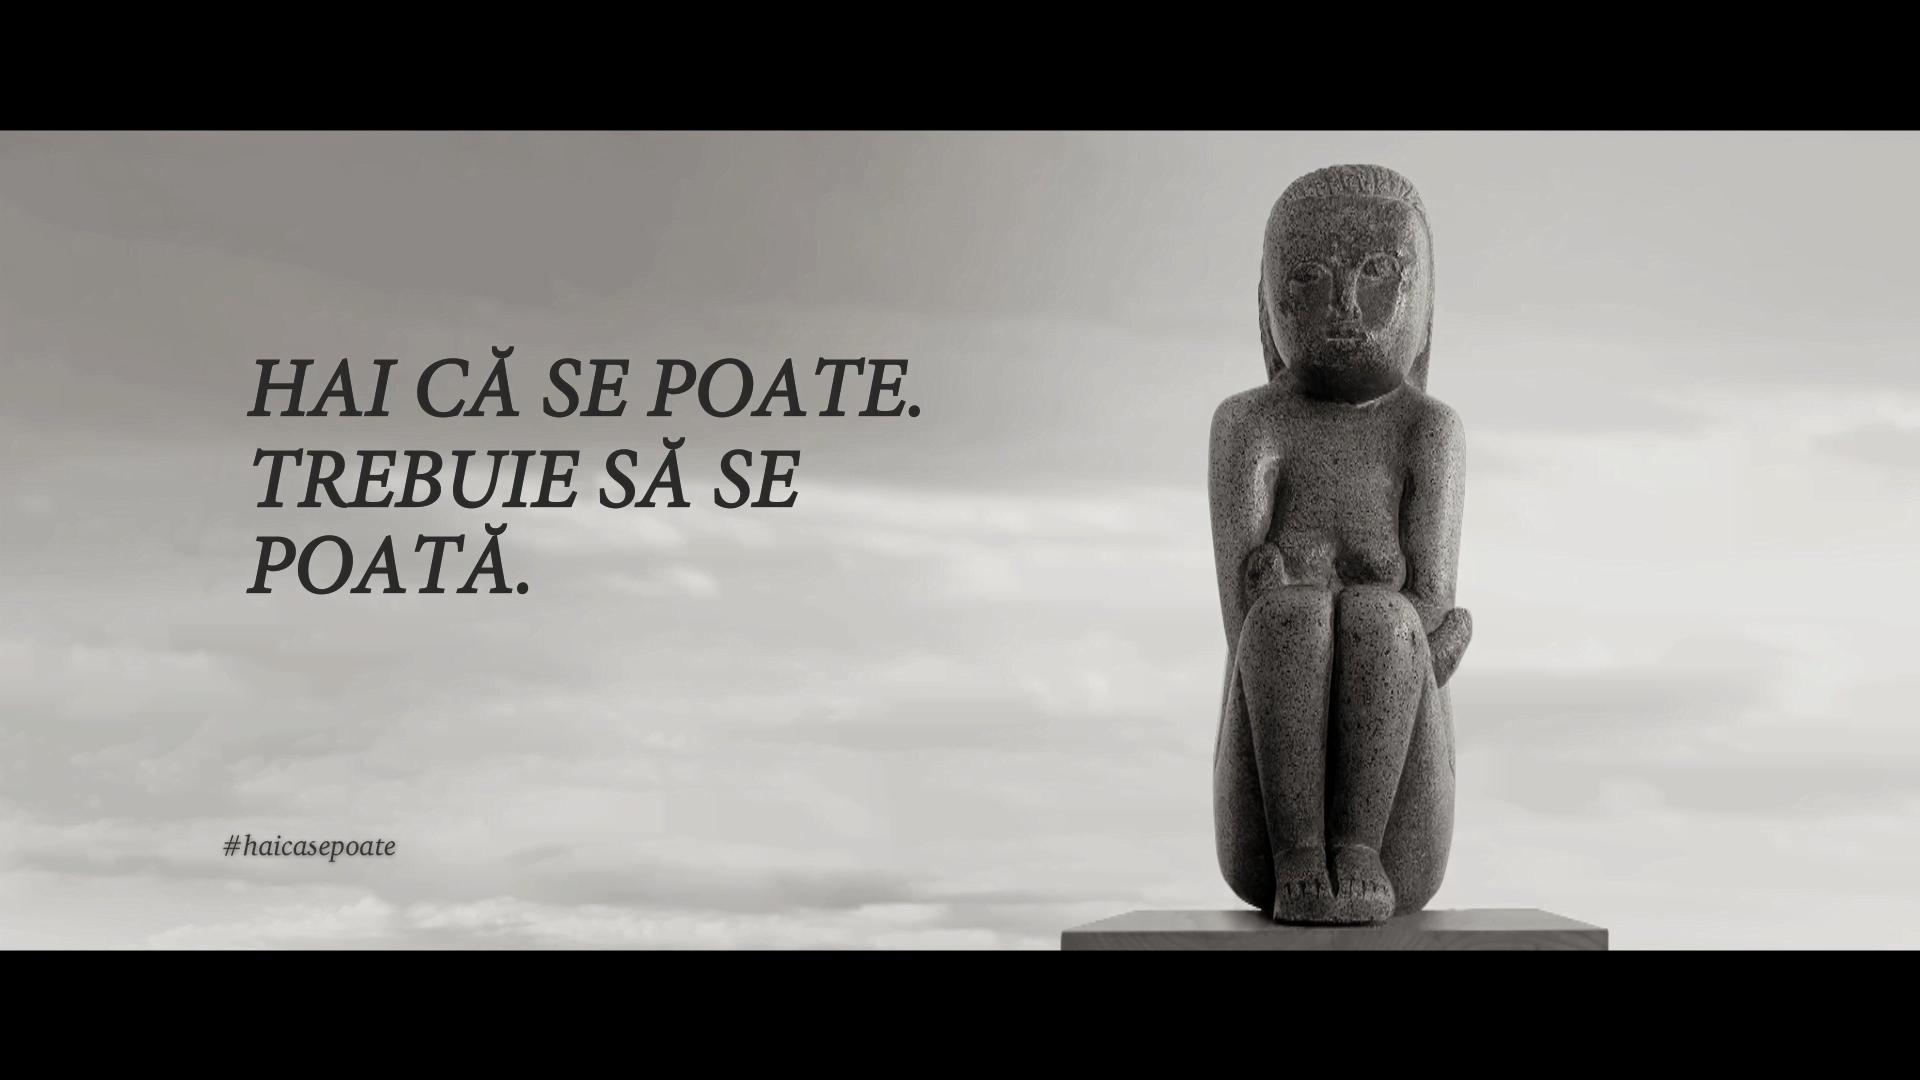 Campania Hai că se poate! îi încurajează pe români să doneze pentru achiziționarea sculpturii Cumințenia Pământului